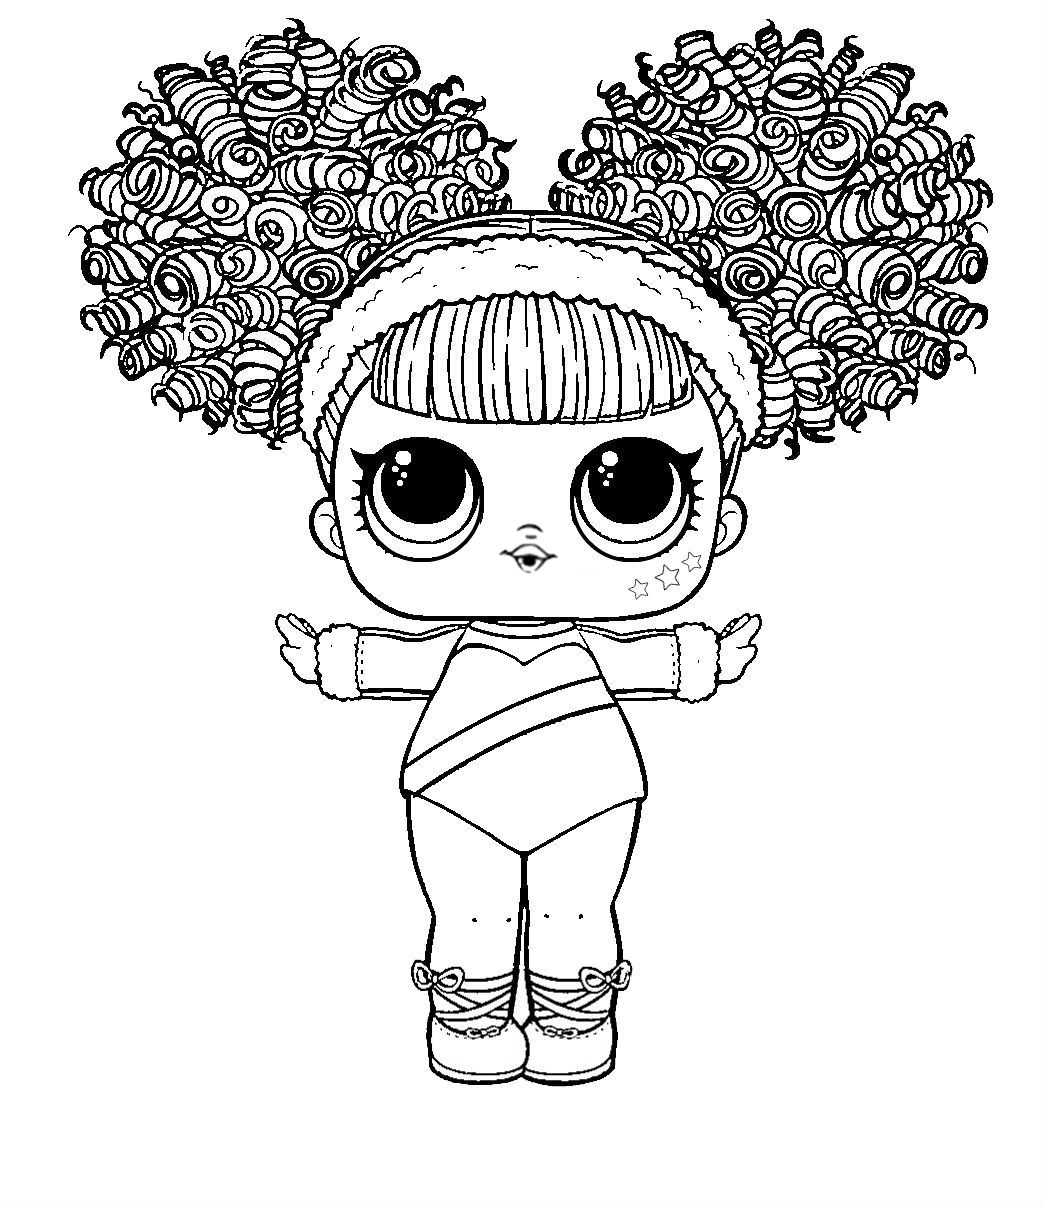 Раскраска куклы ЛОЛ Splits с завитыми волосами, пышными хвостиками и пушистым ободком на голове животными (куклы, лол, splits)